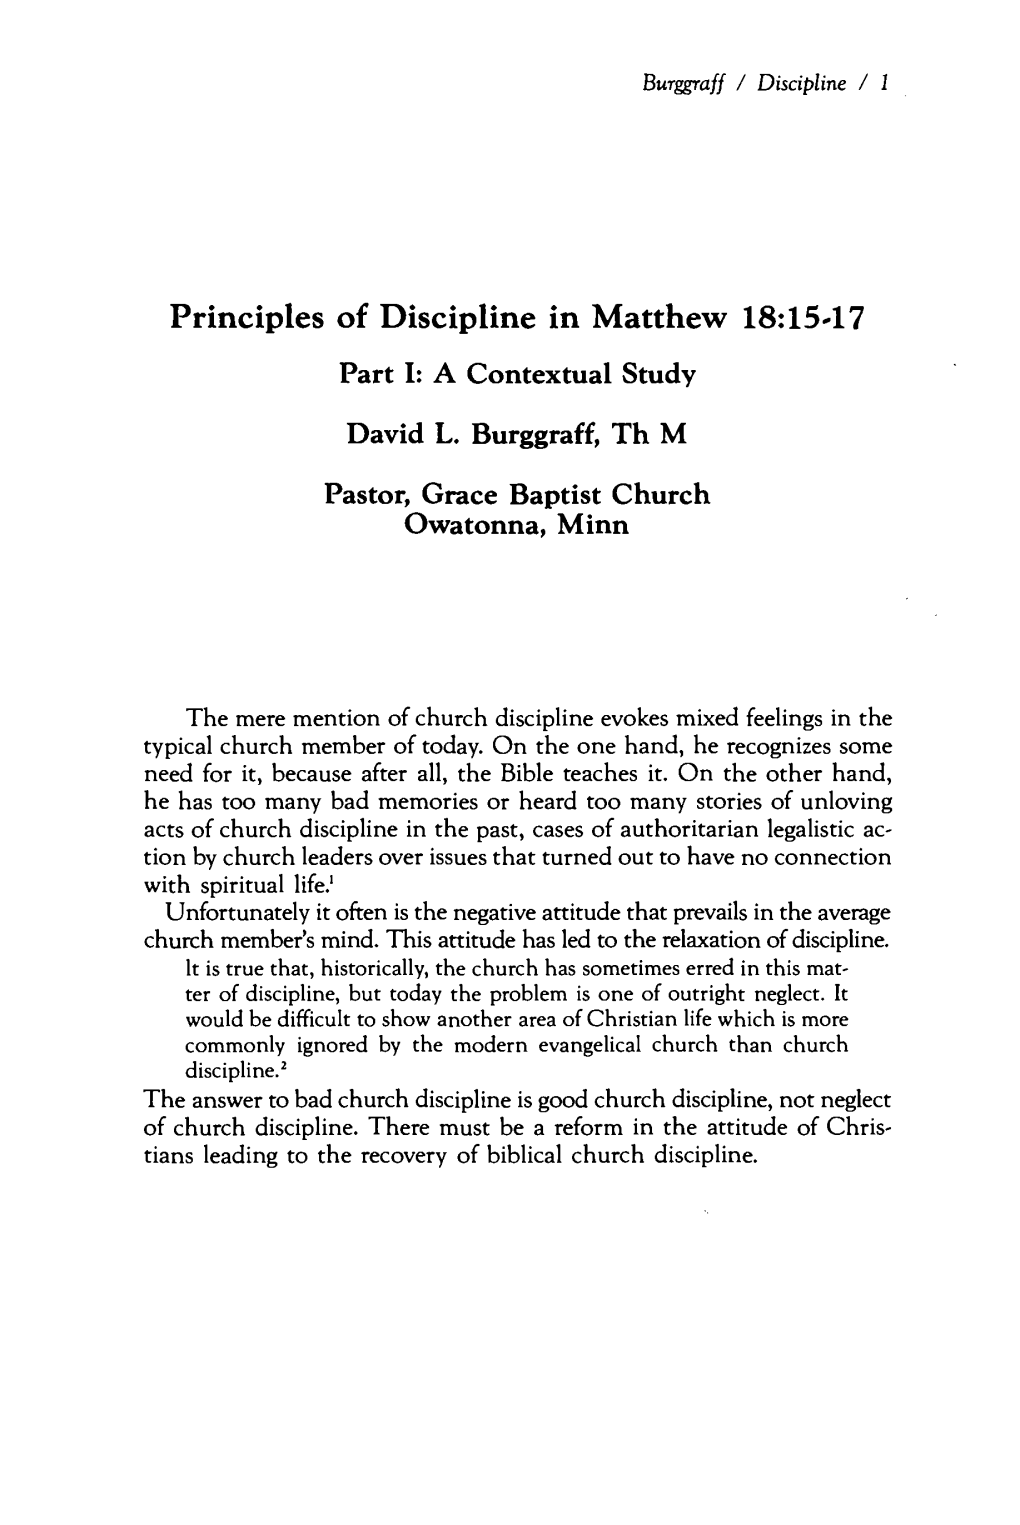 Principles of Discipline in Matthew 18:15-17. Part I: a Contextual Study